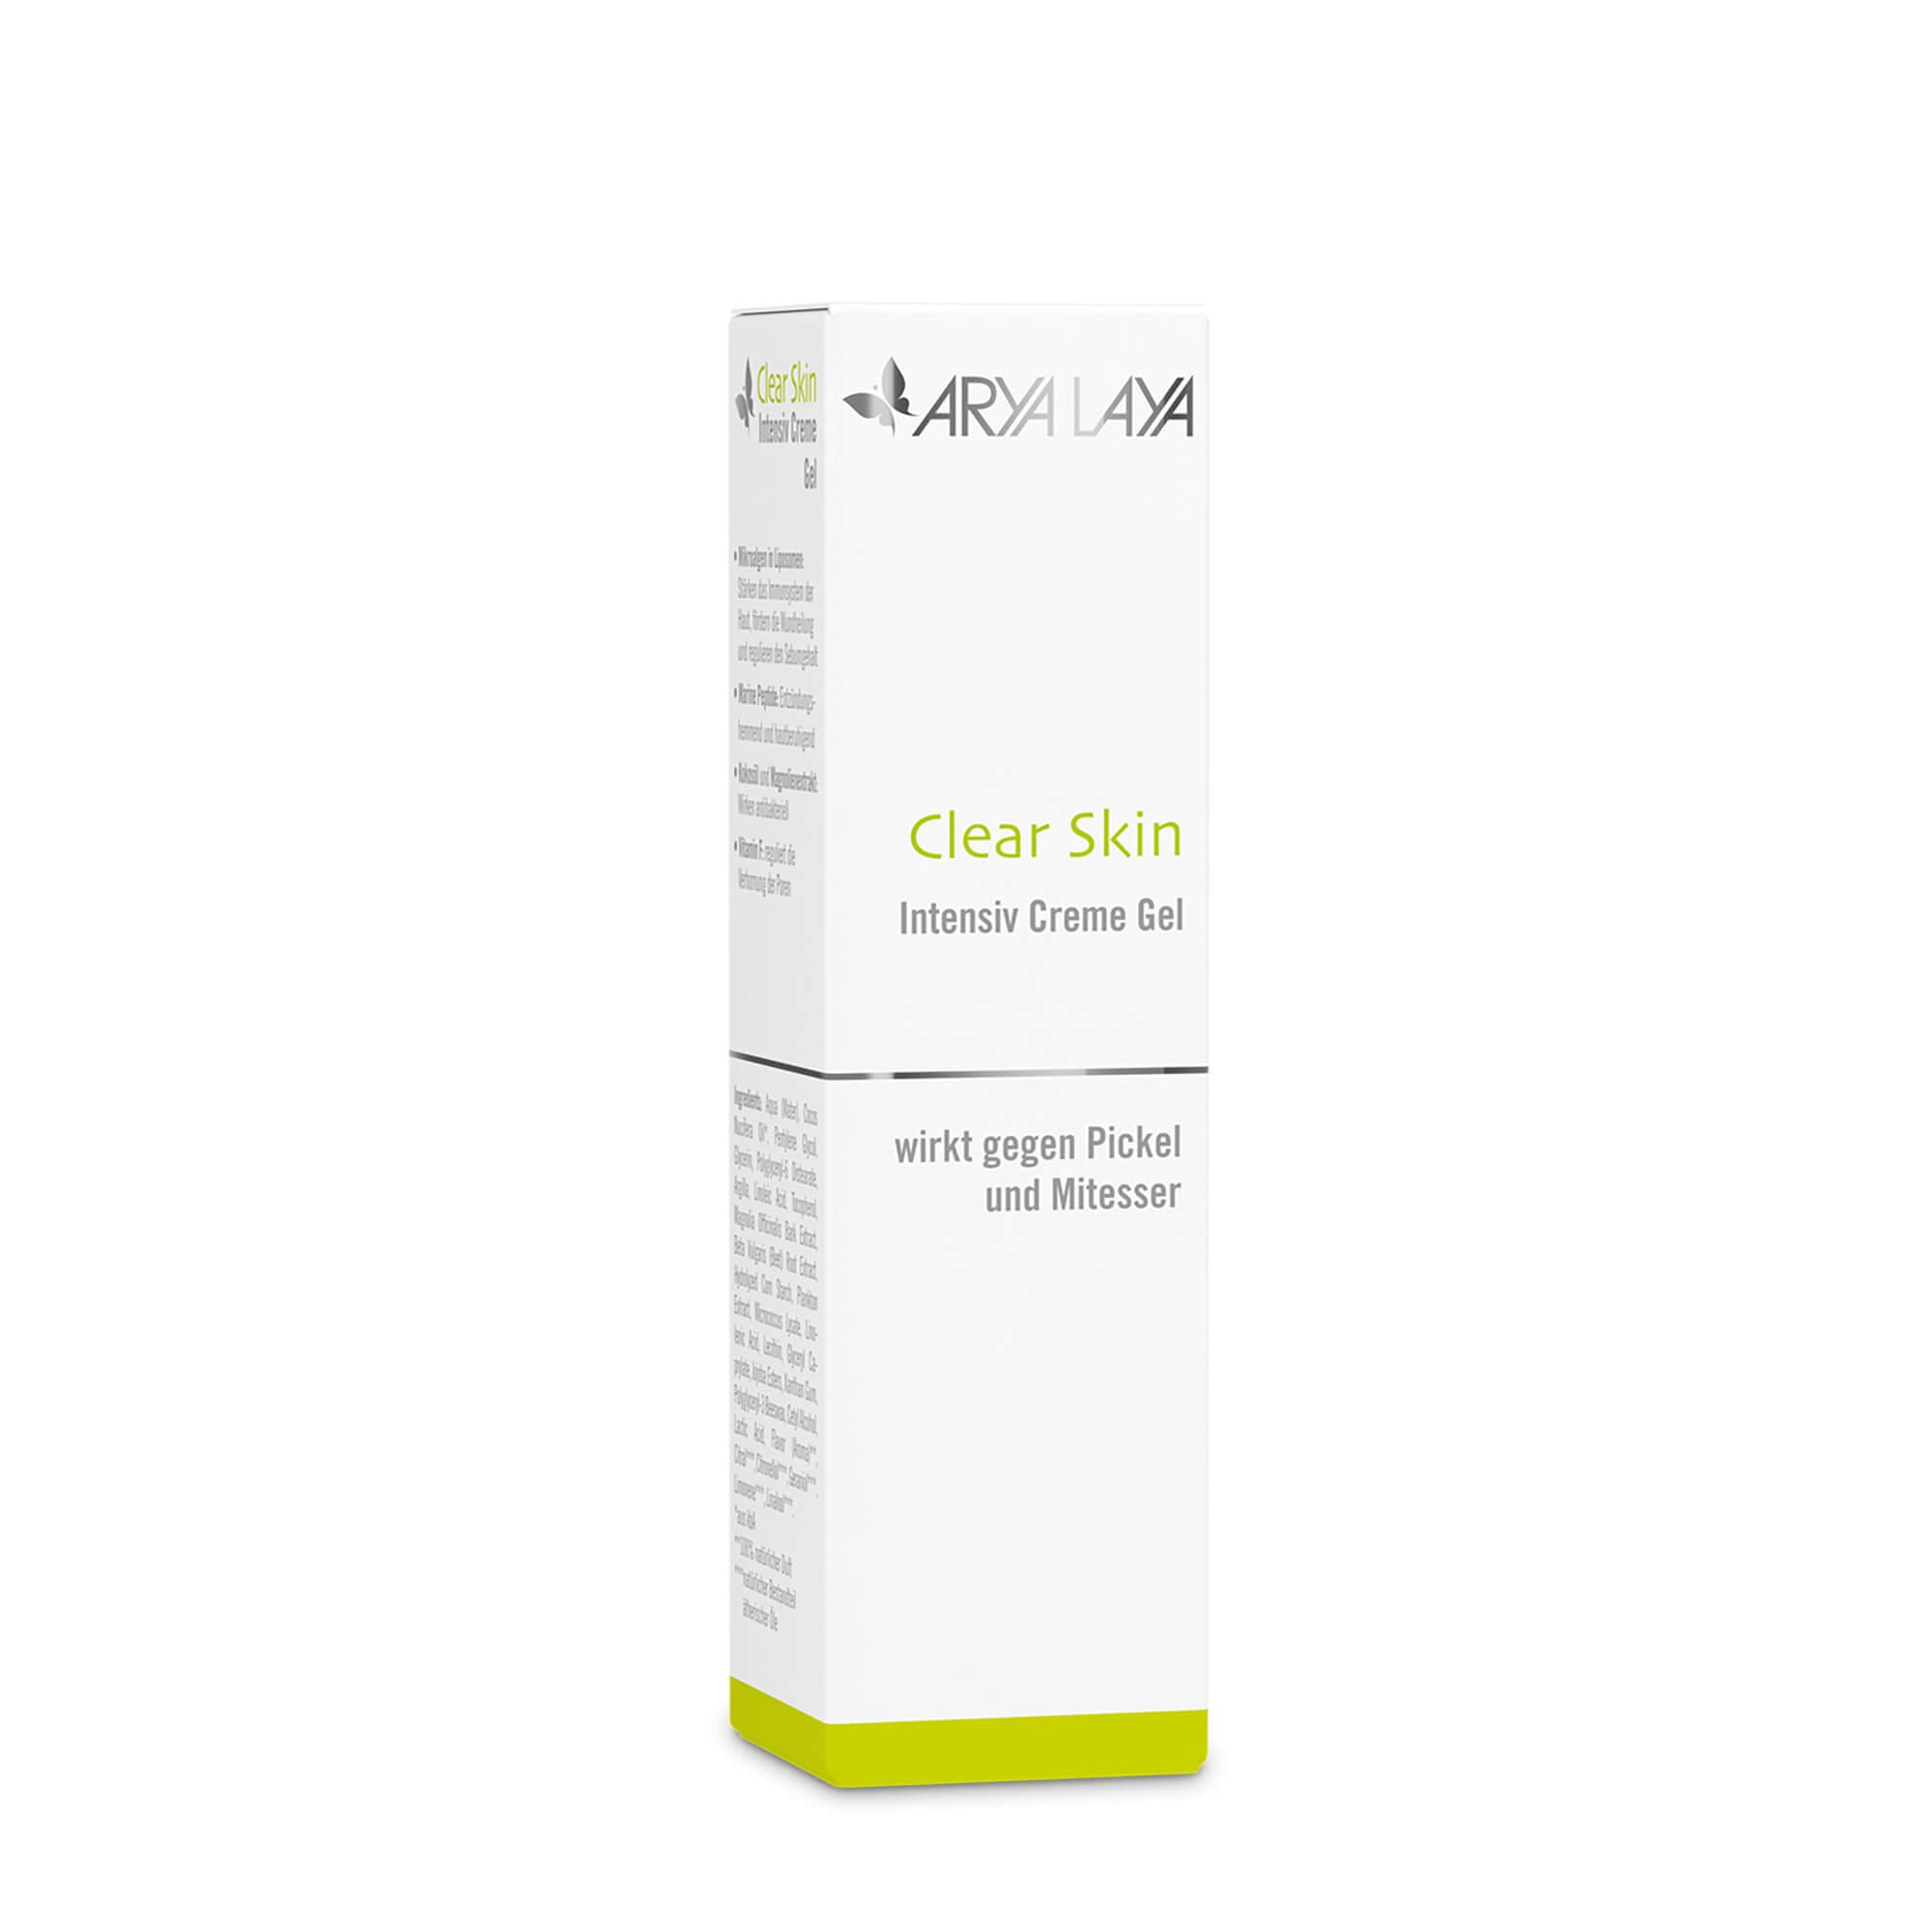 Faltschachtel mit ARYA LAYA Clear Skin Intensiv Creme Gel, 30 ml